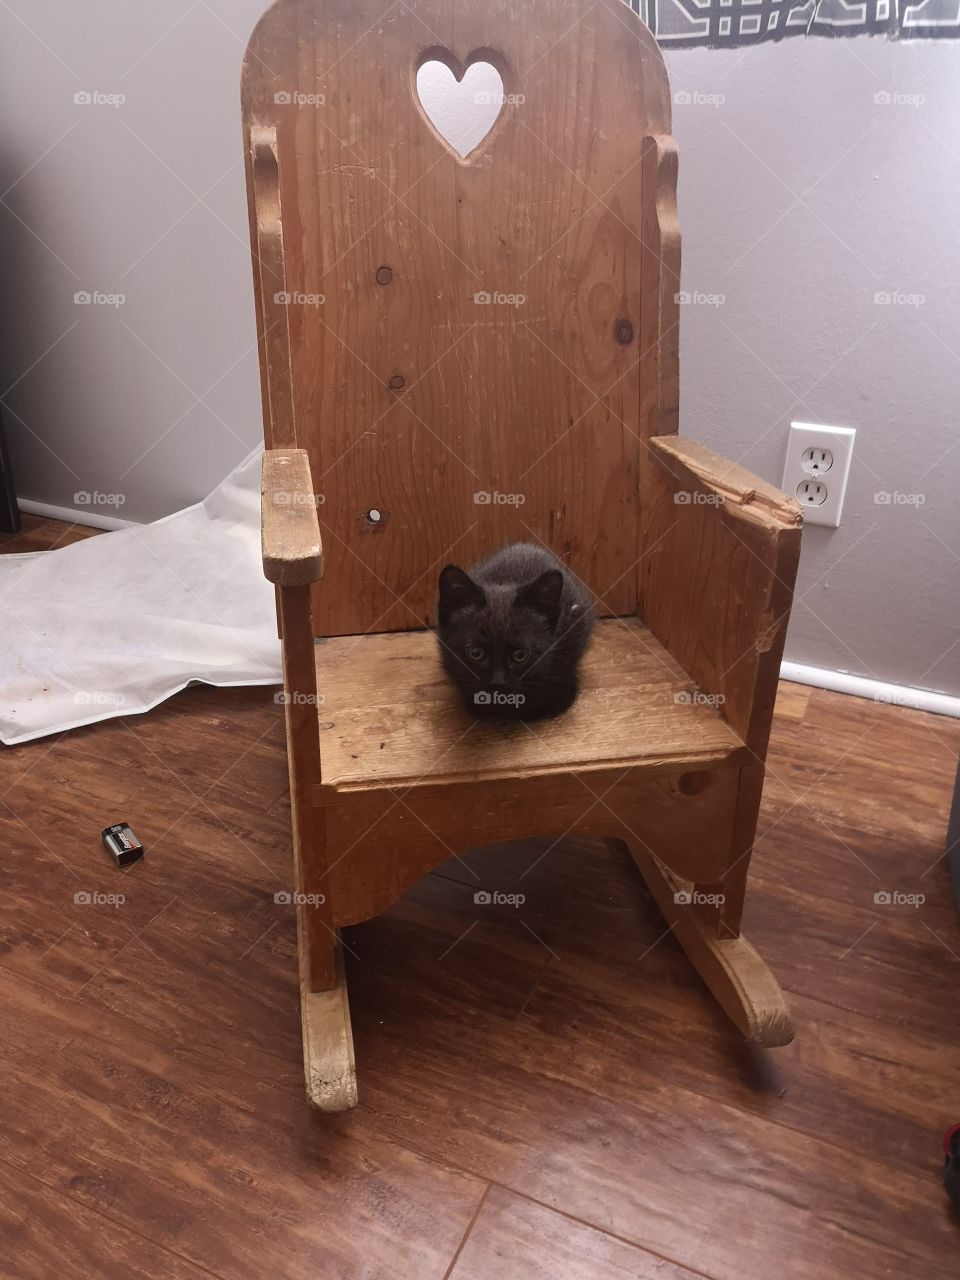 Kitten on a Chair